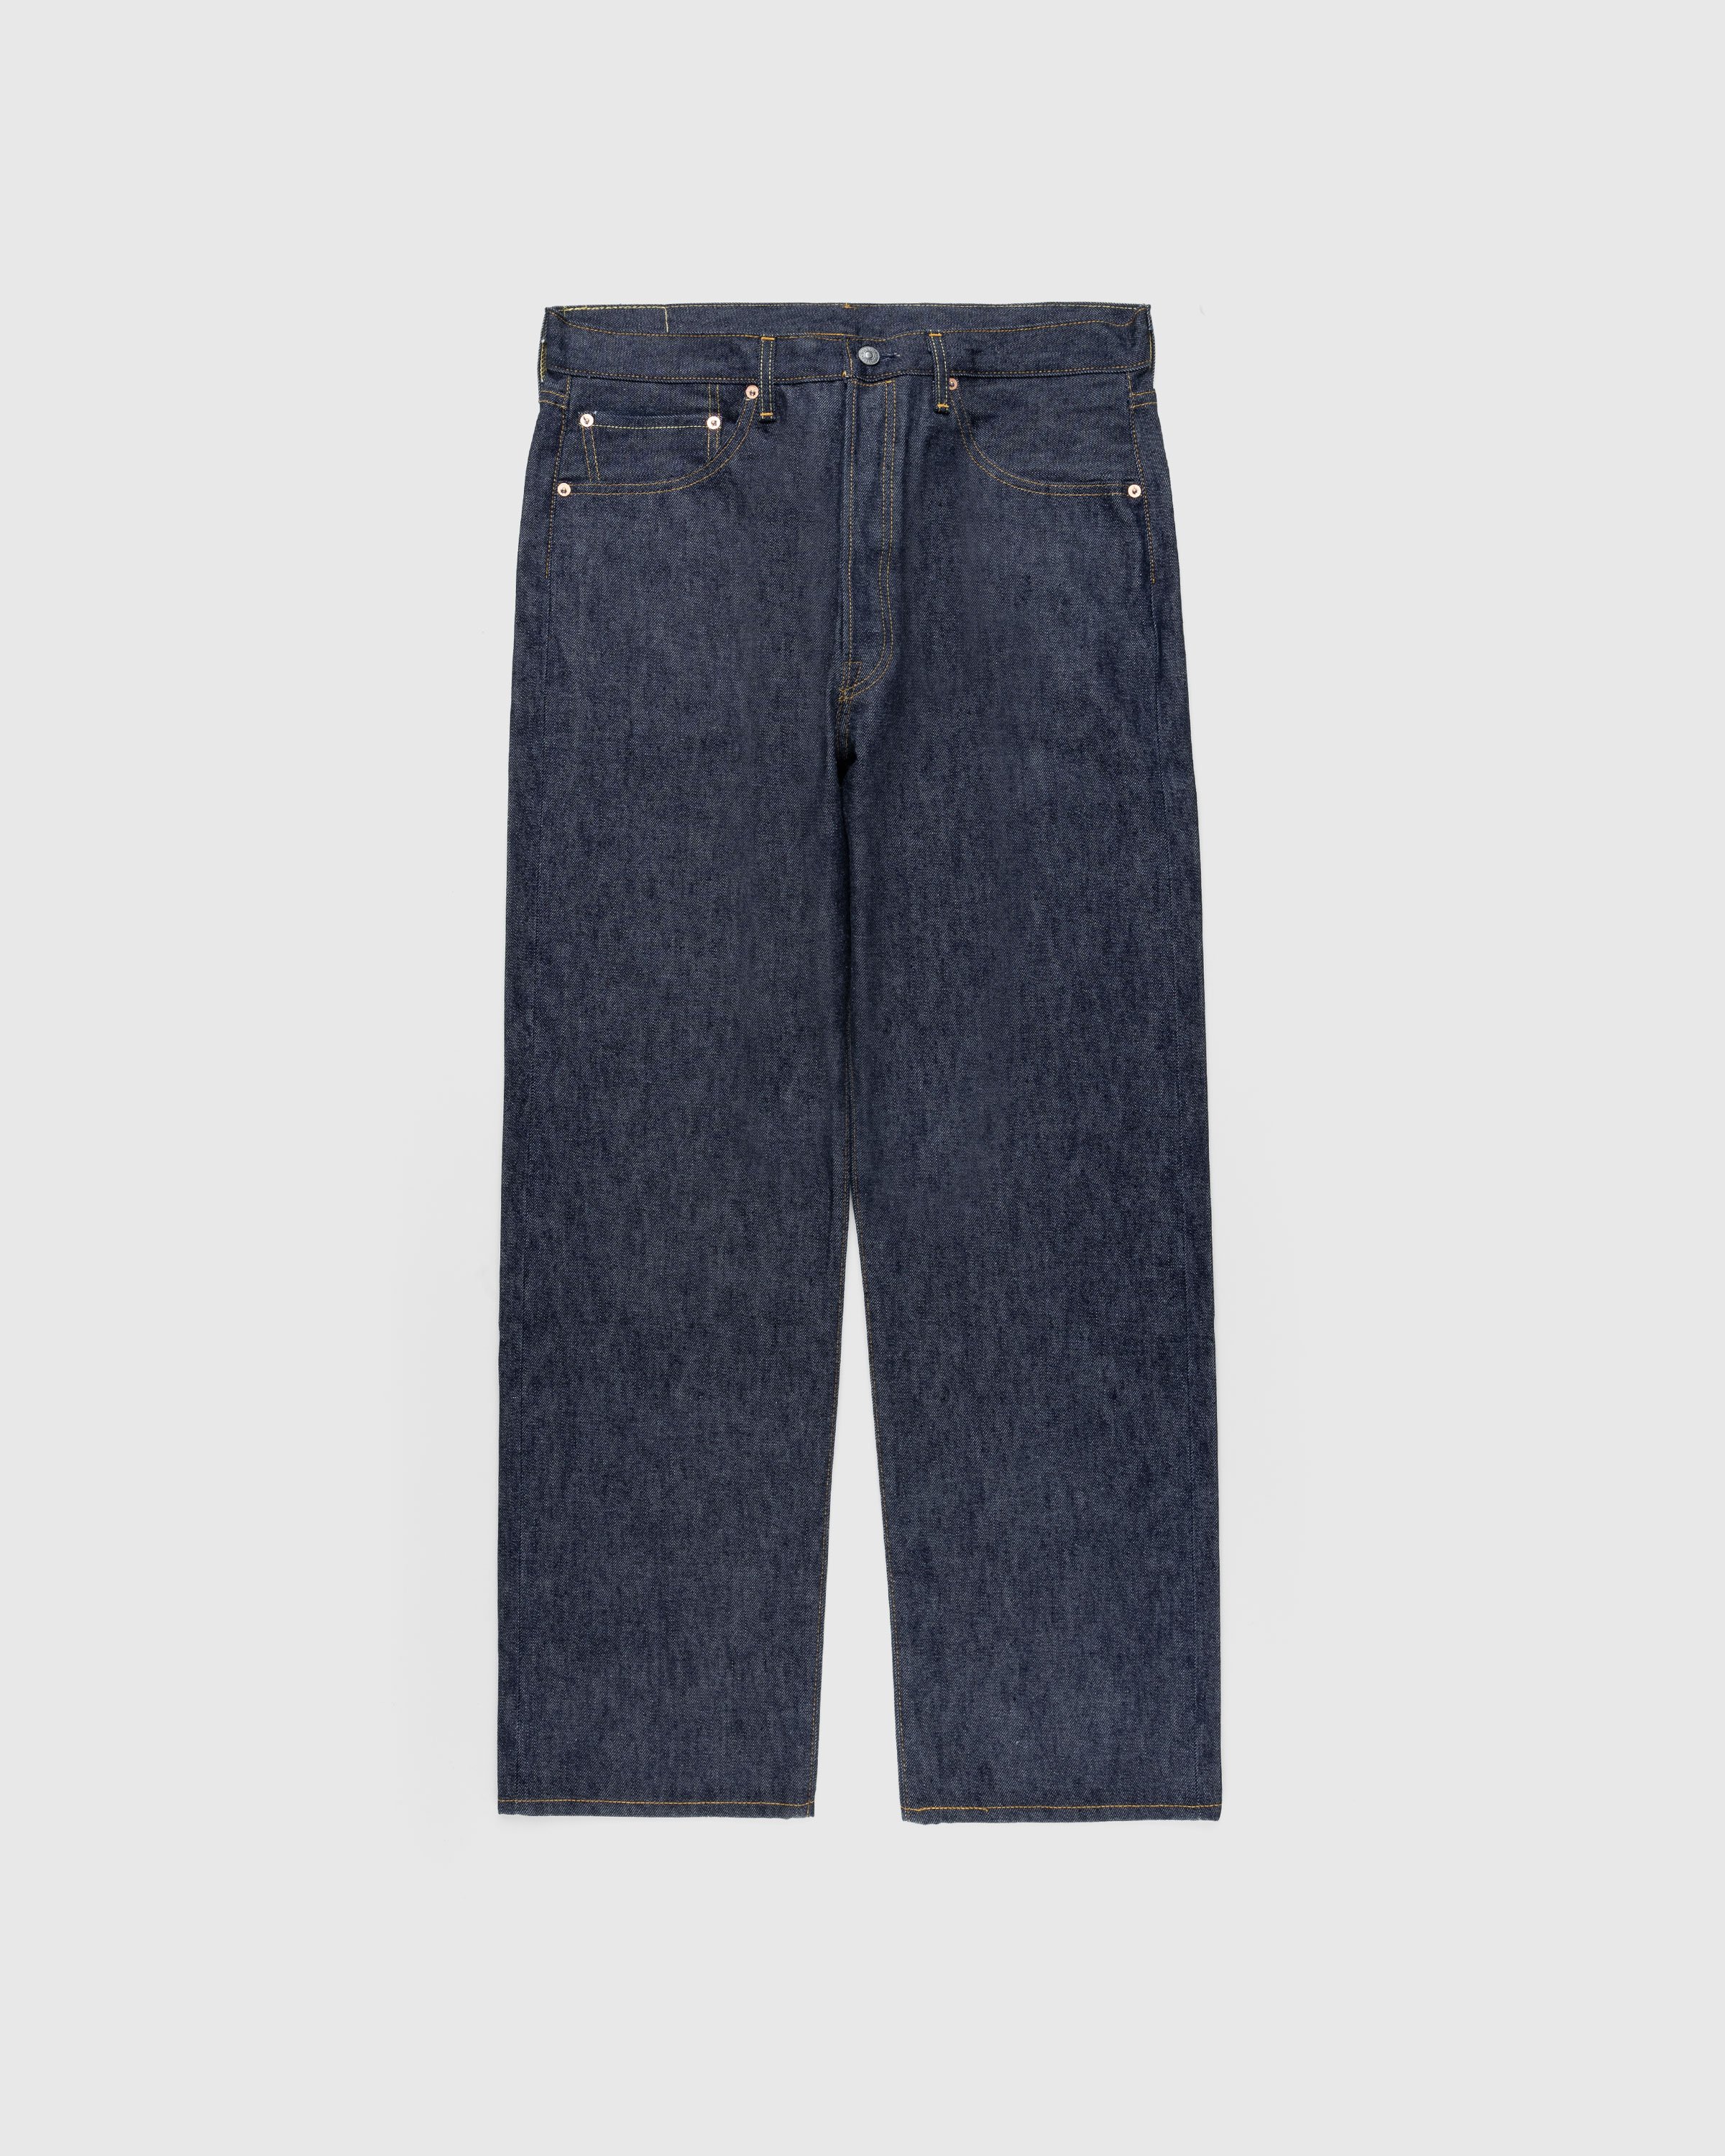 Levi's - 1955 501 Jeans Dark Indigo Flat Finish - Clothing - Blue - Image 1